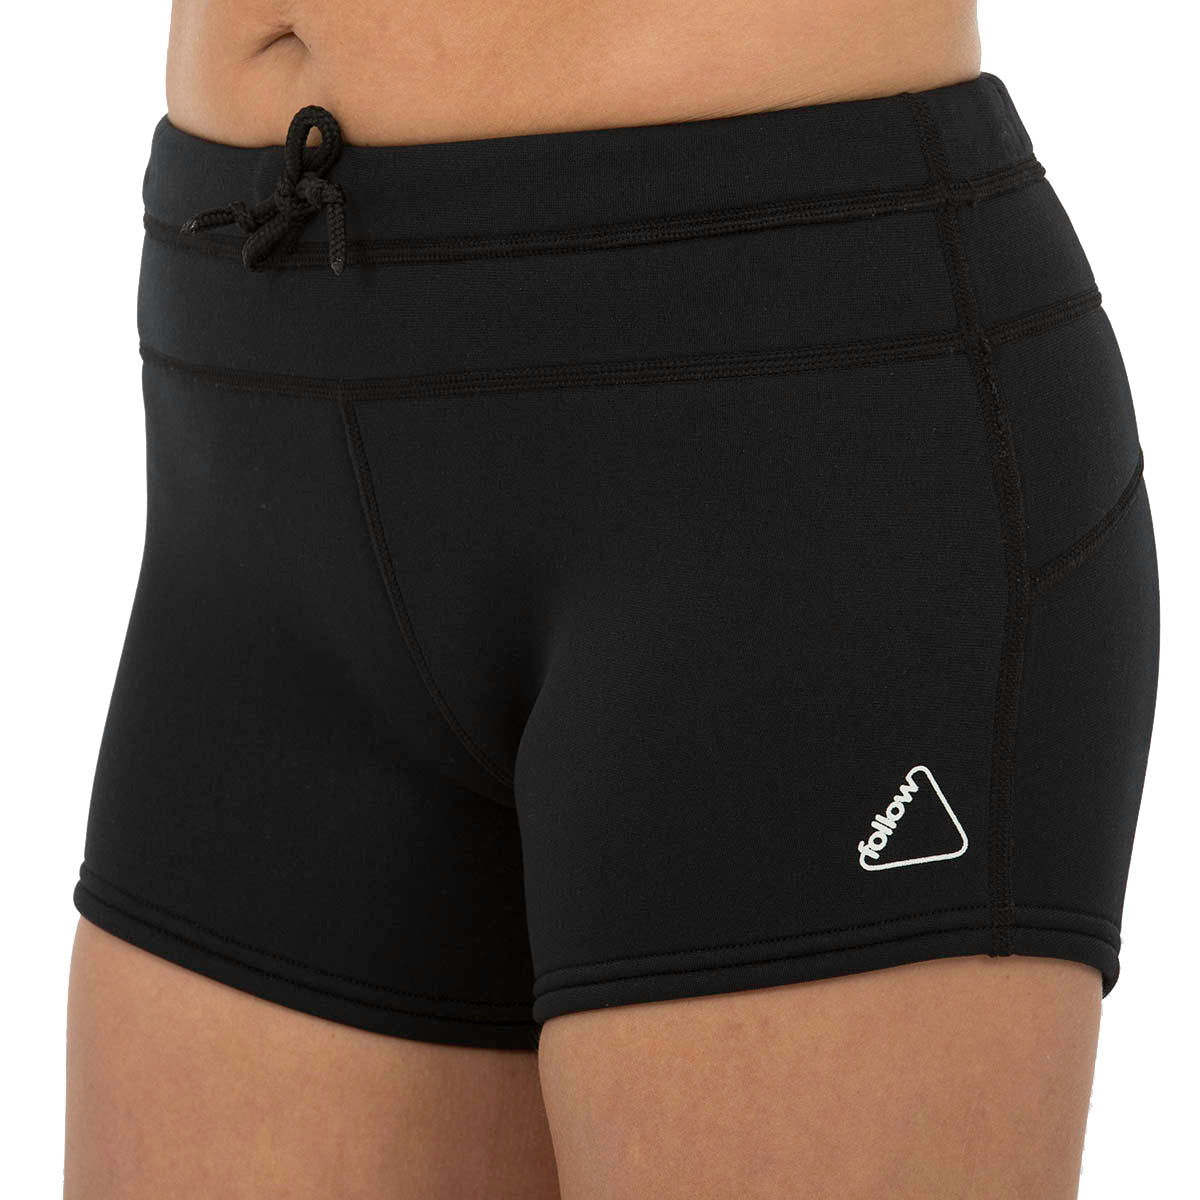 Follow Ladies 1.5mm Pro Wetty Shorts in Black - BoardCo